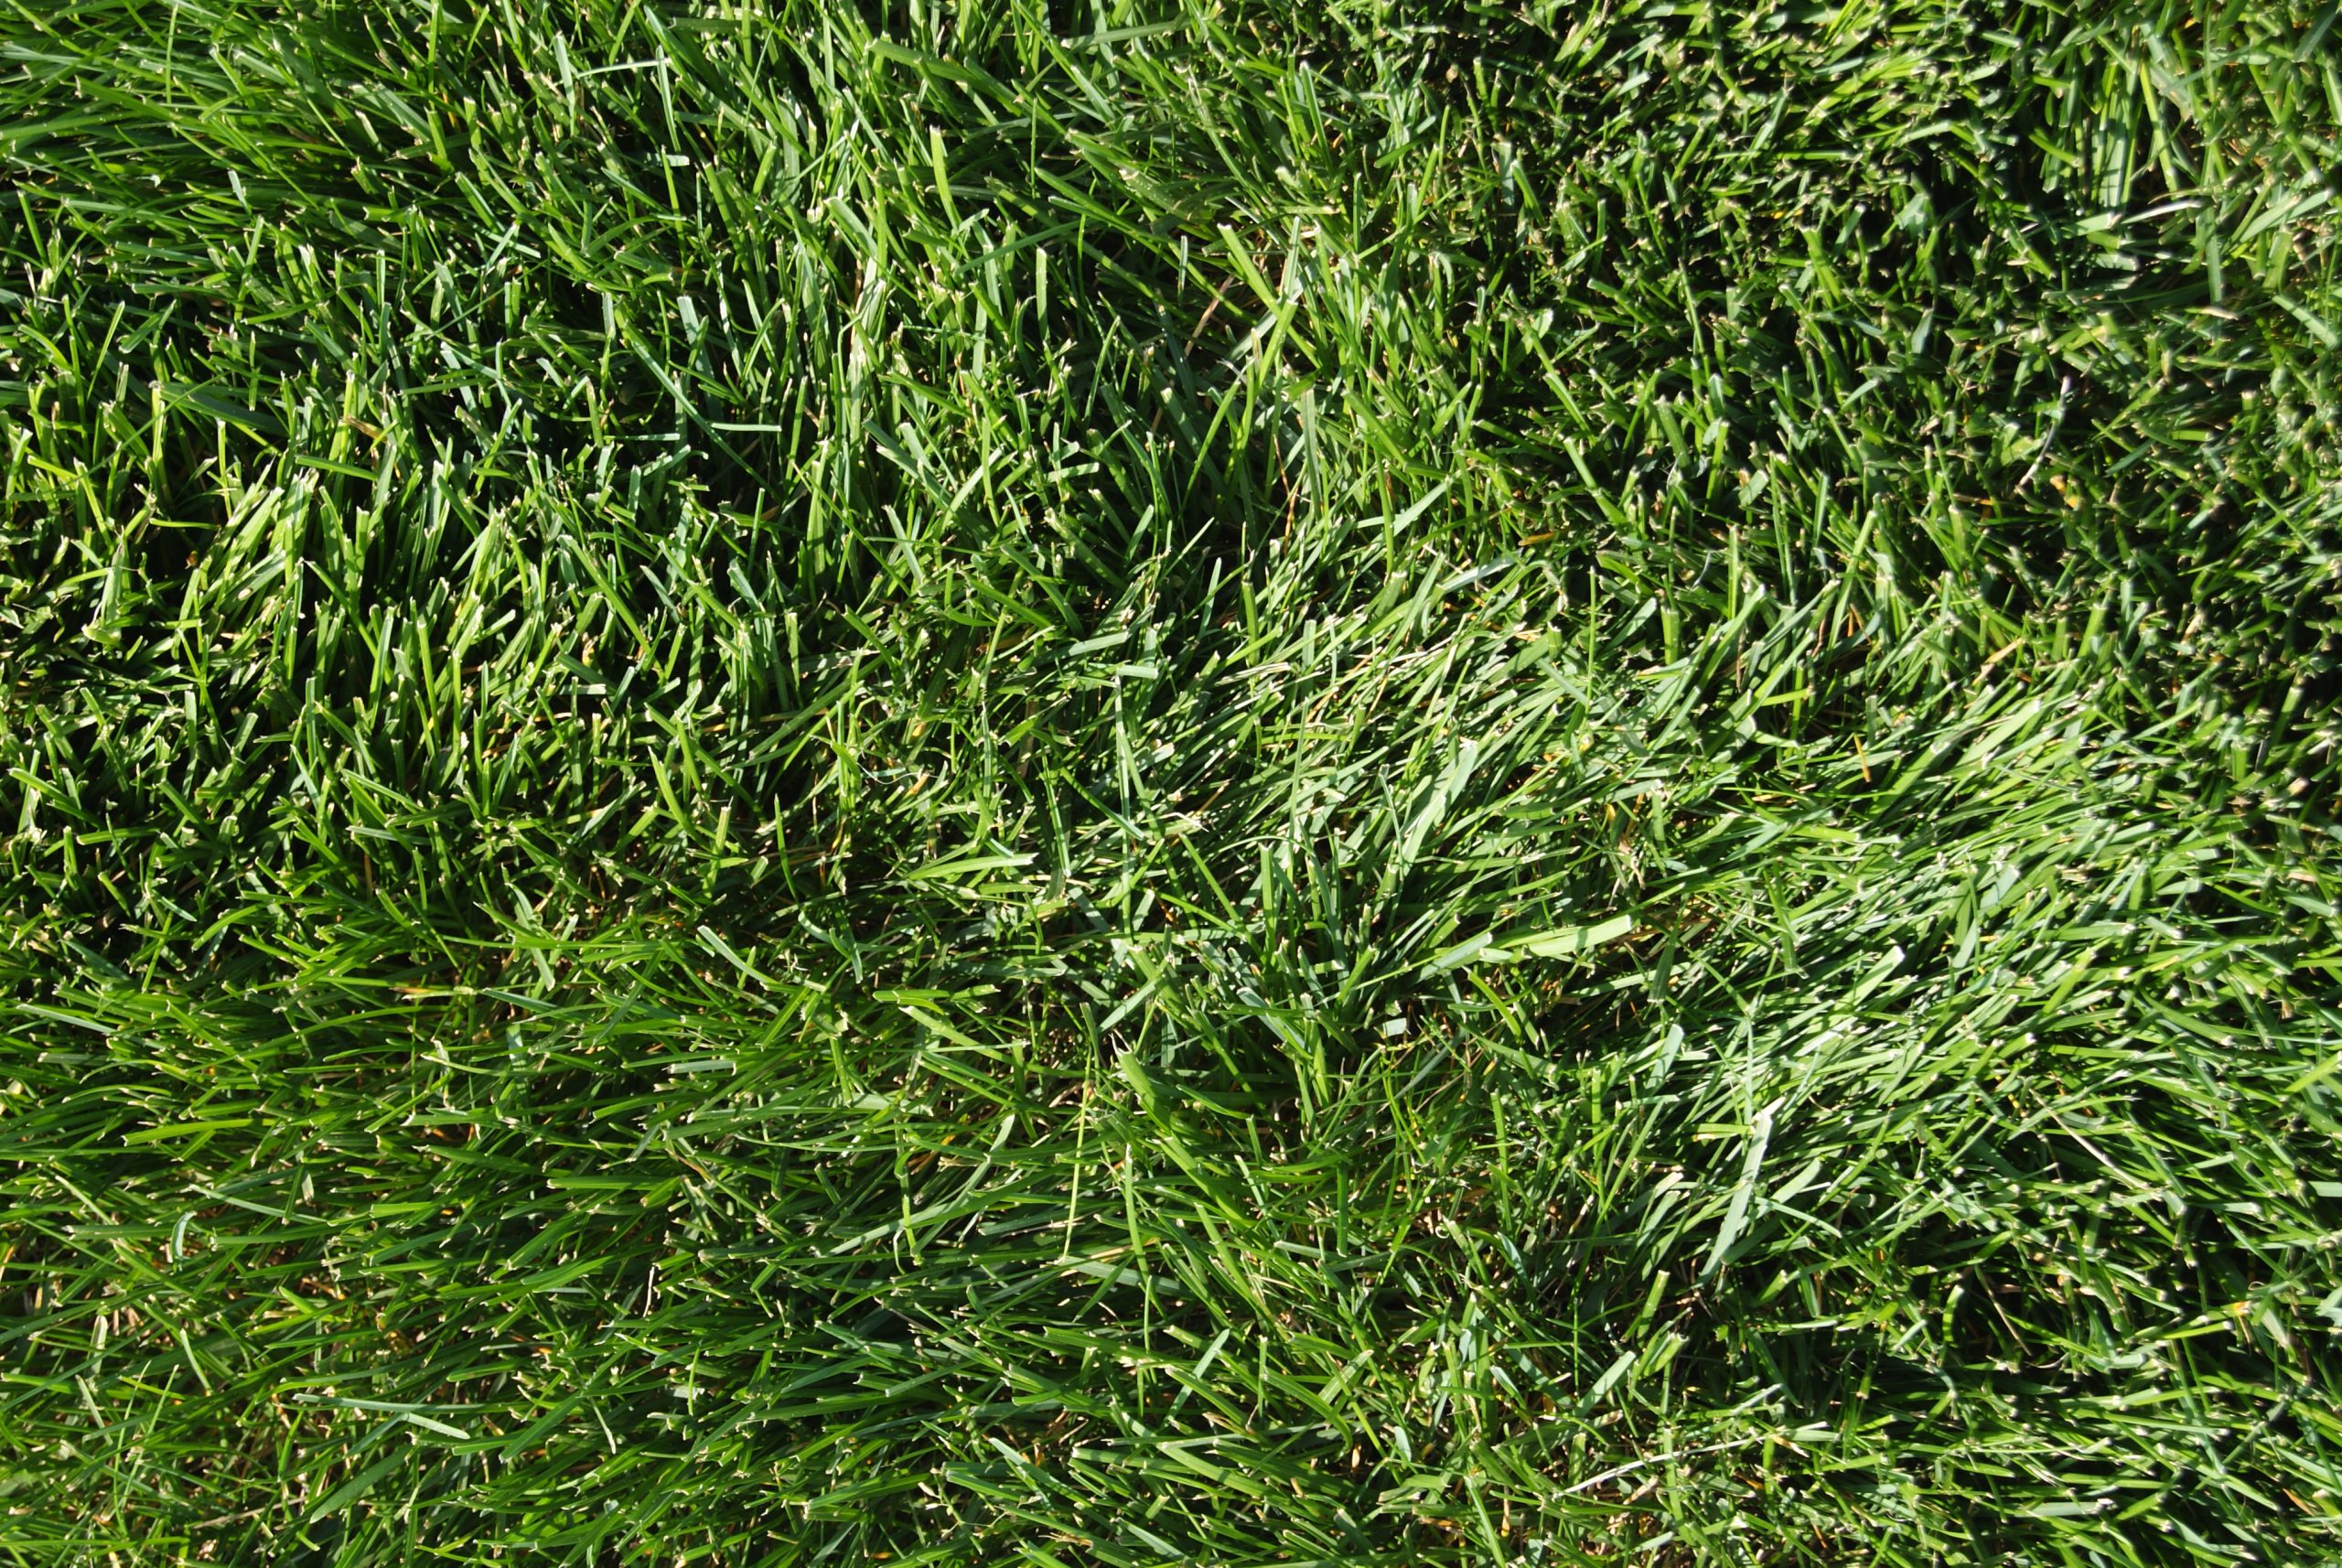 Kentucky Bluegrass Lawn Grass Digital Landscape Photography